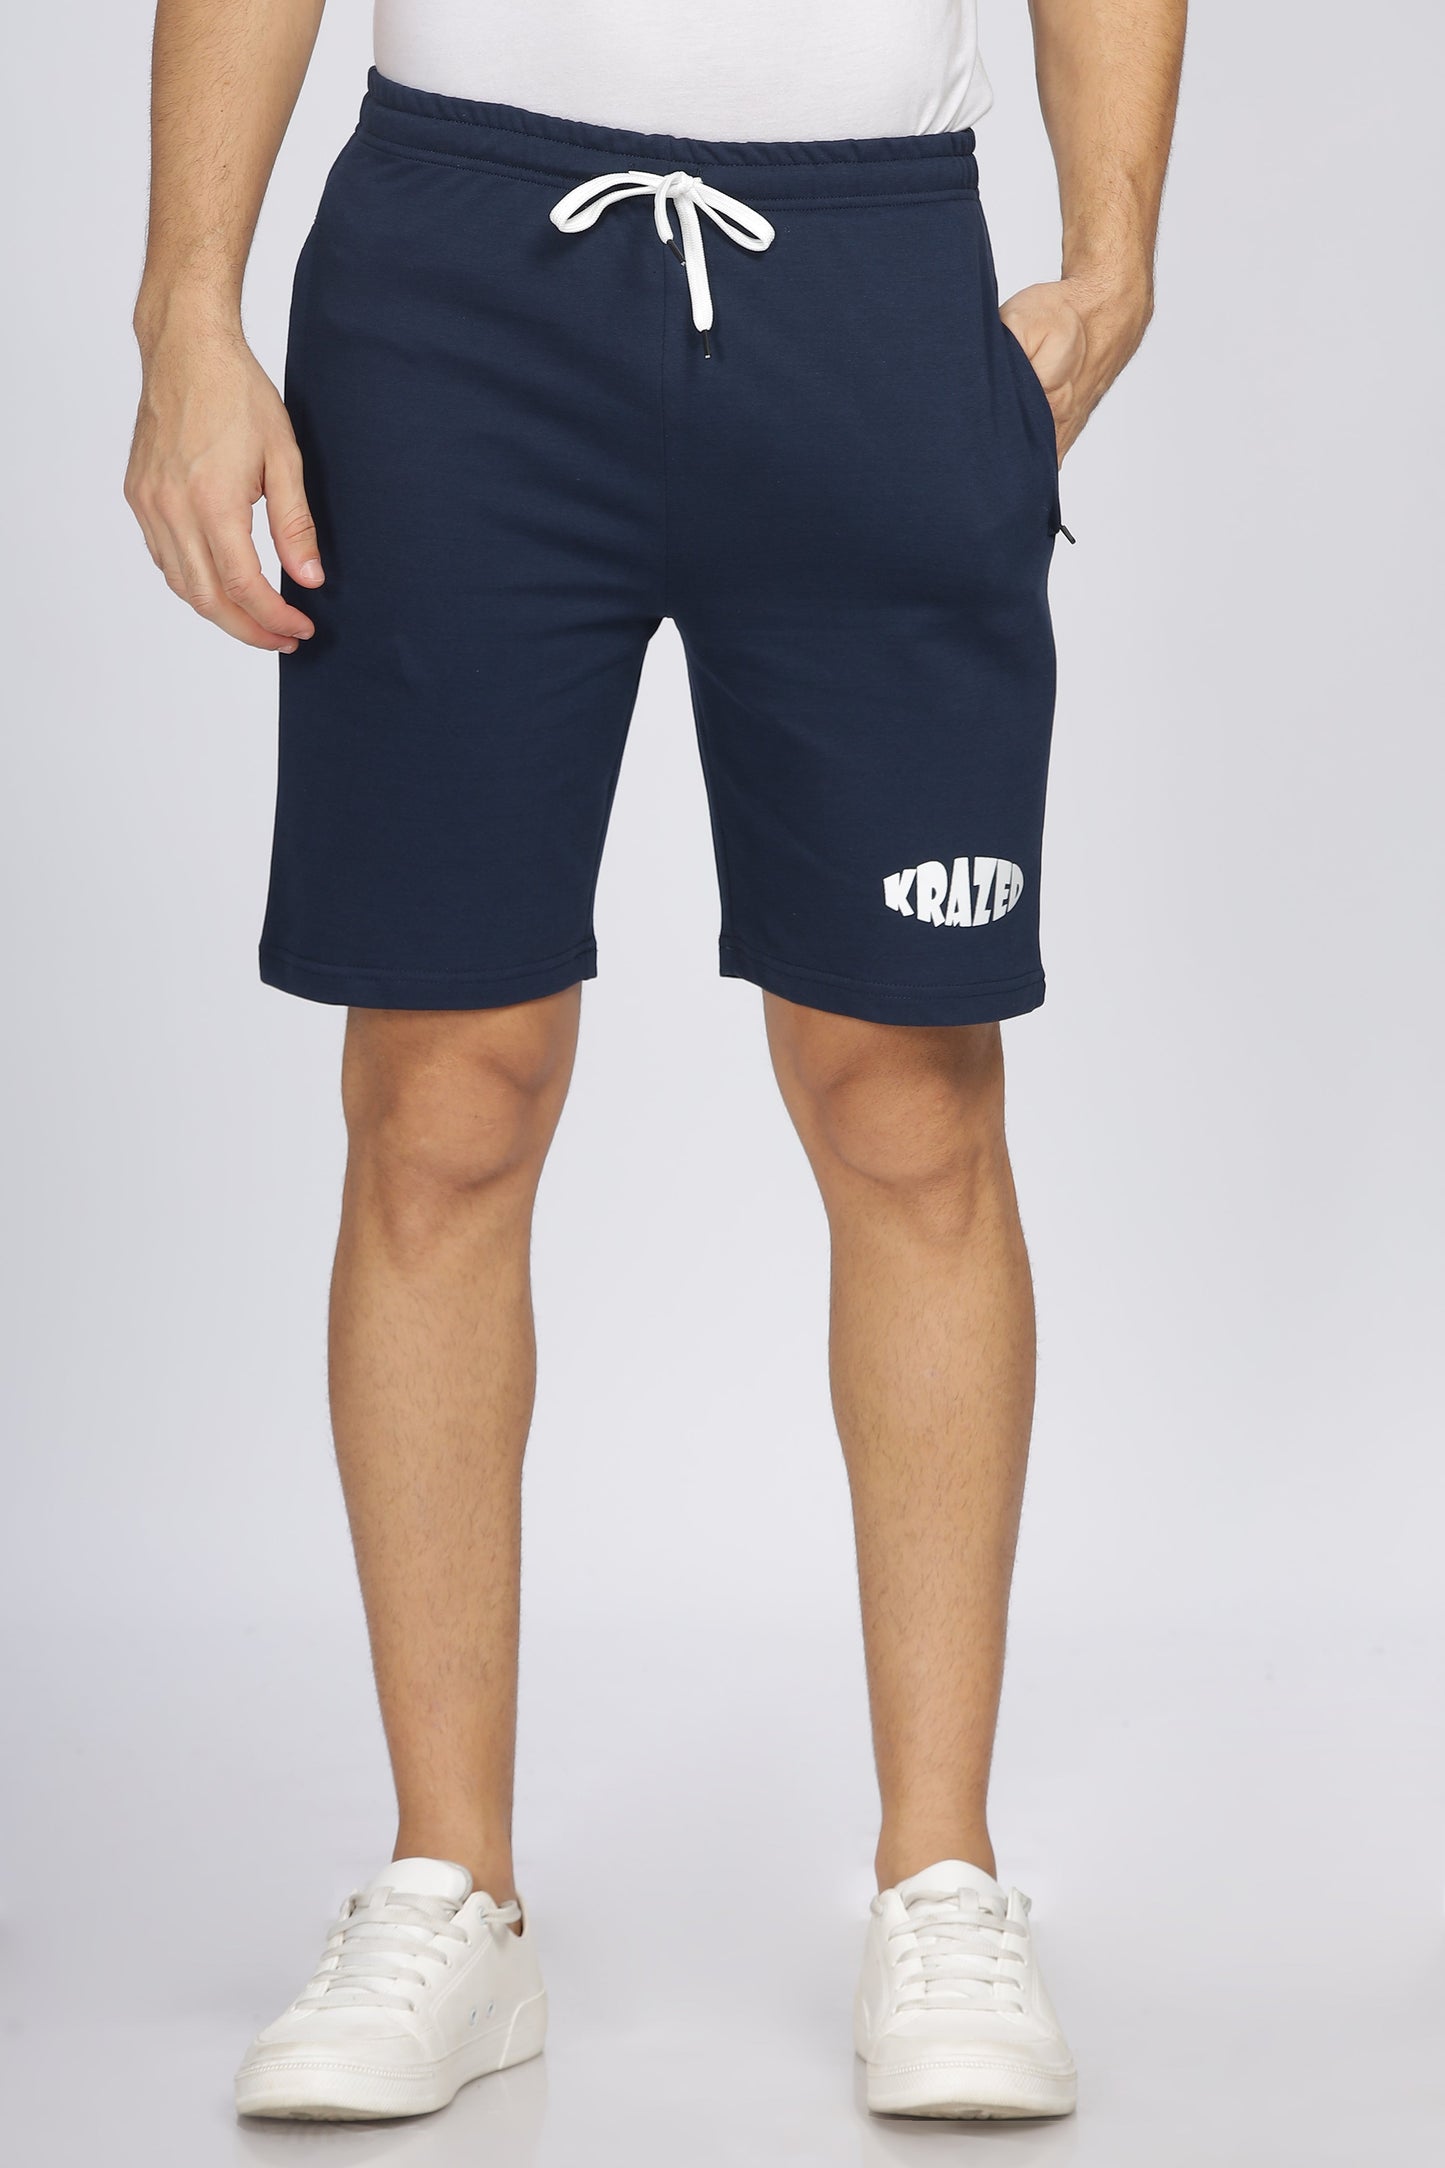 Navy blue lounge zipper shorts